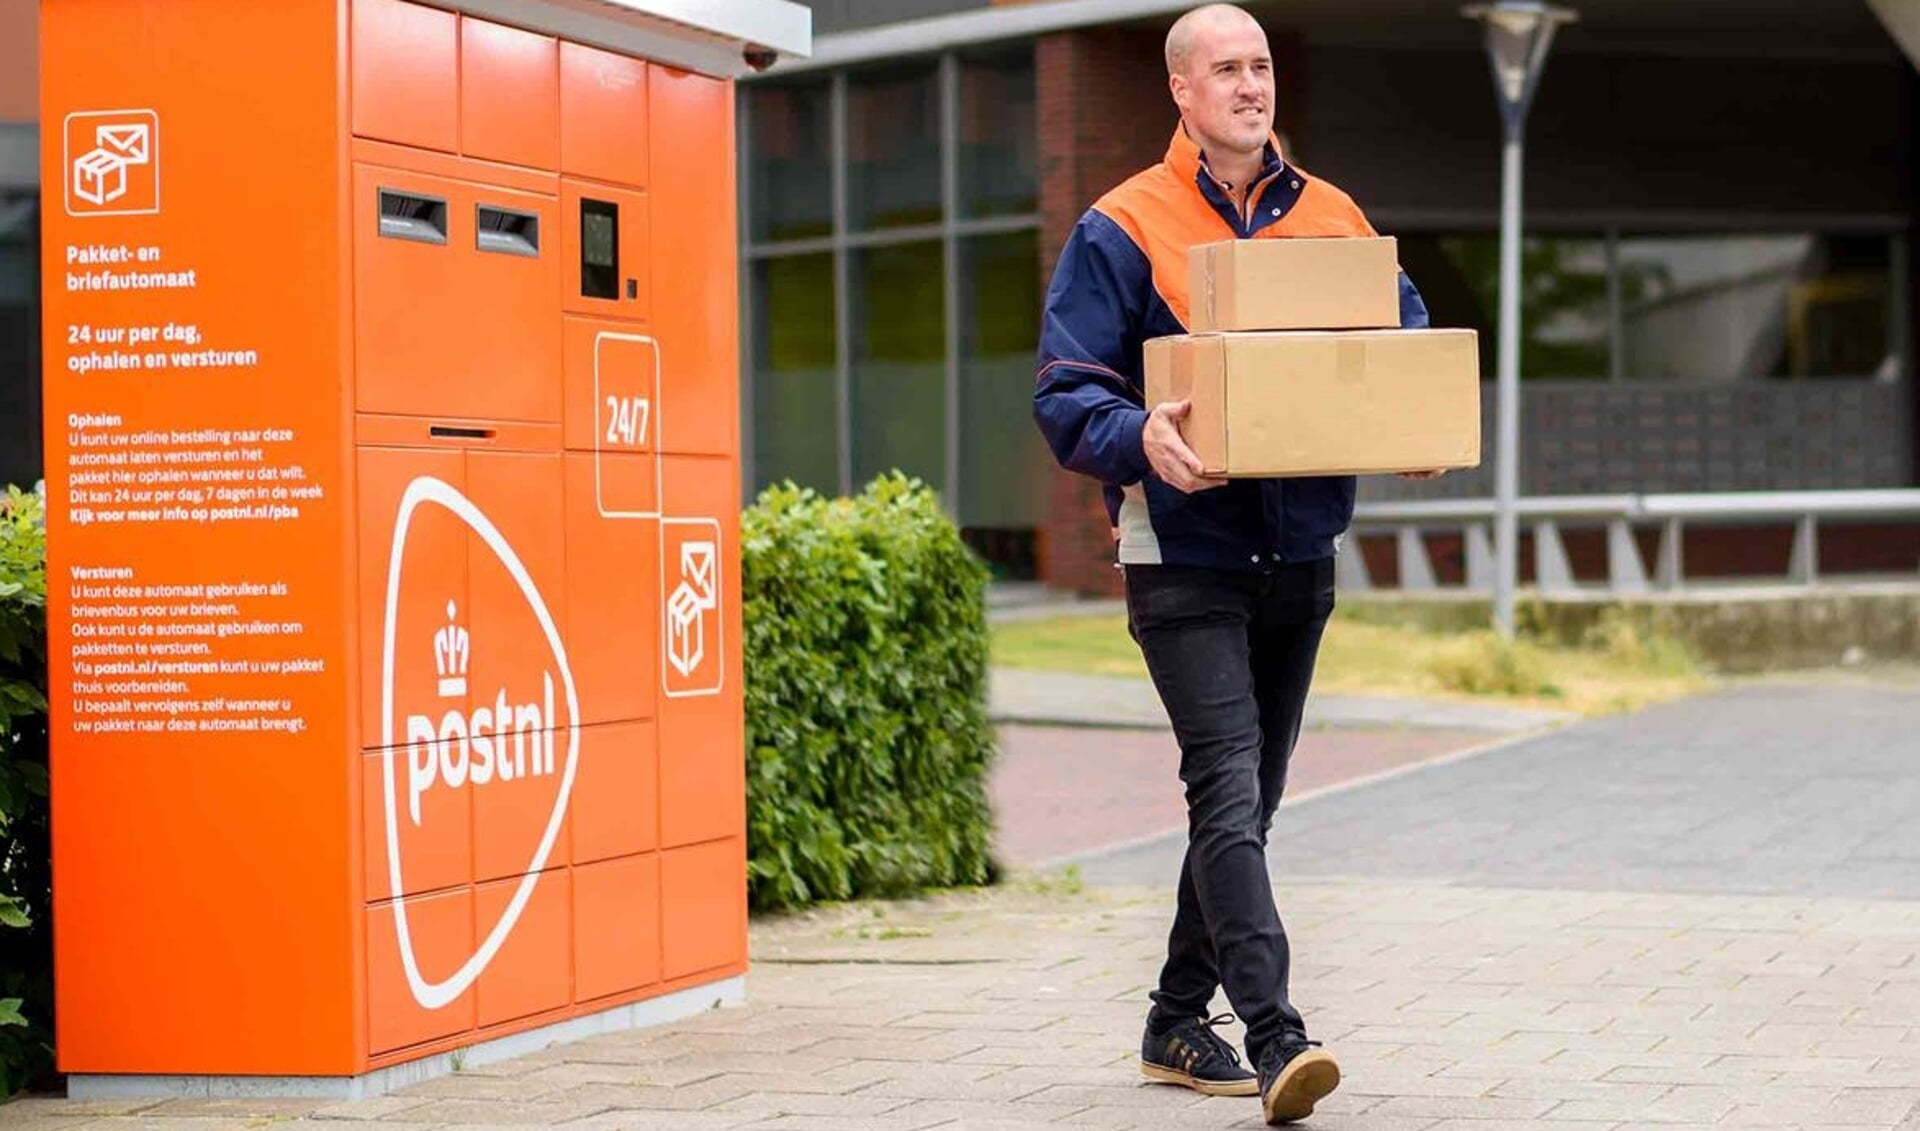 PostNL pakket- en briefautomaat Heemstede - Heemsteedse Courant Nieuws de Heemstede